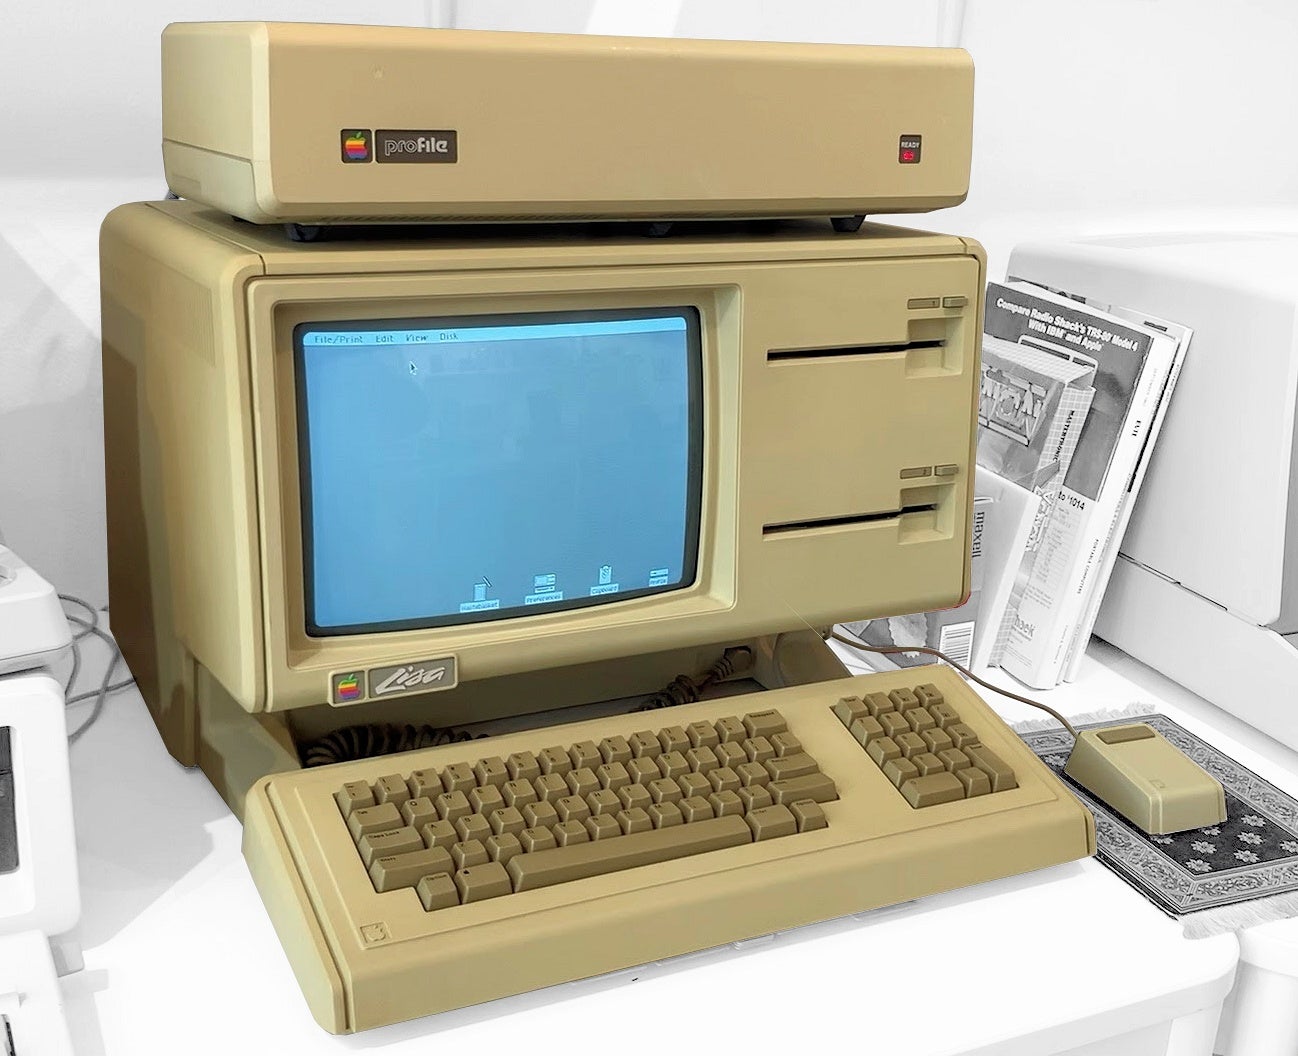 Photograph of Apple Lisa computer